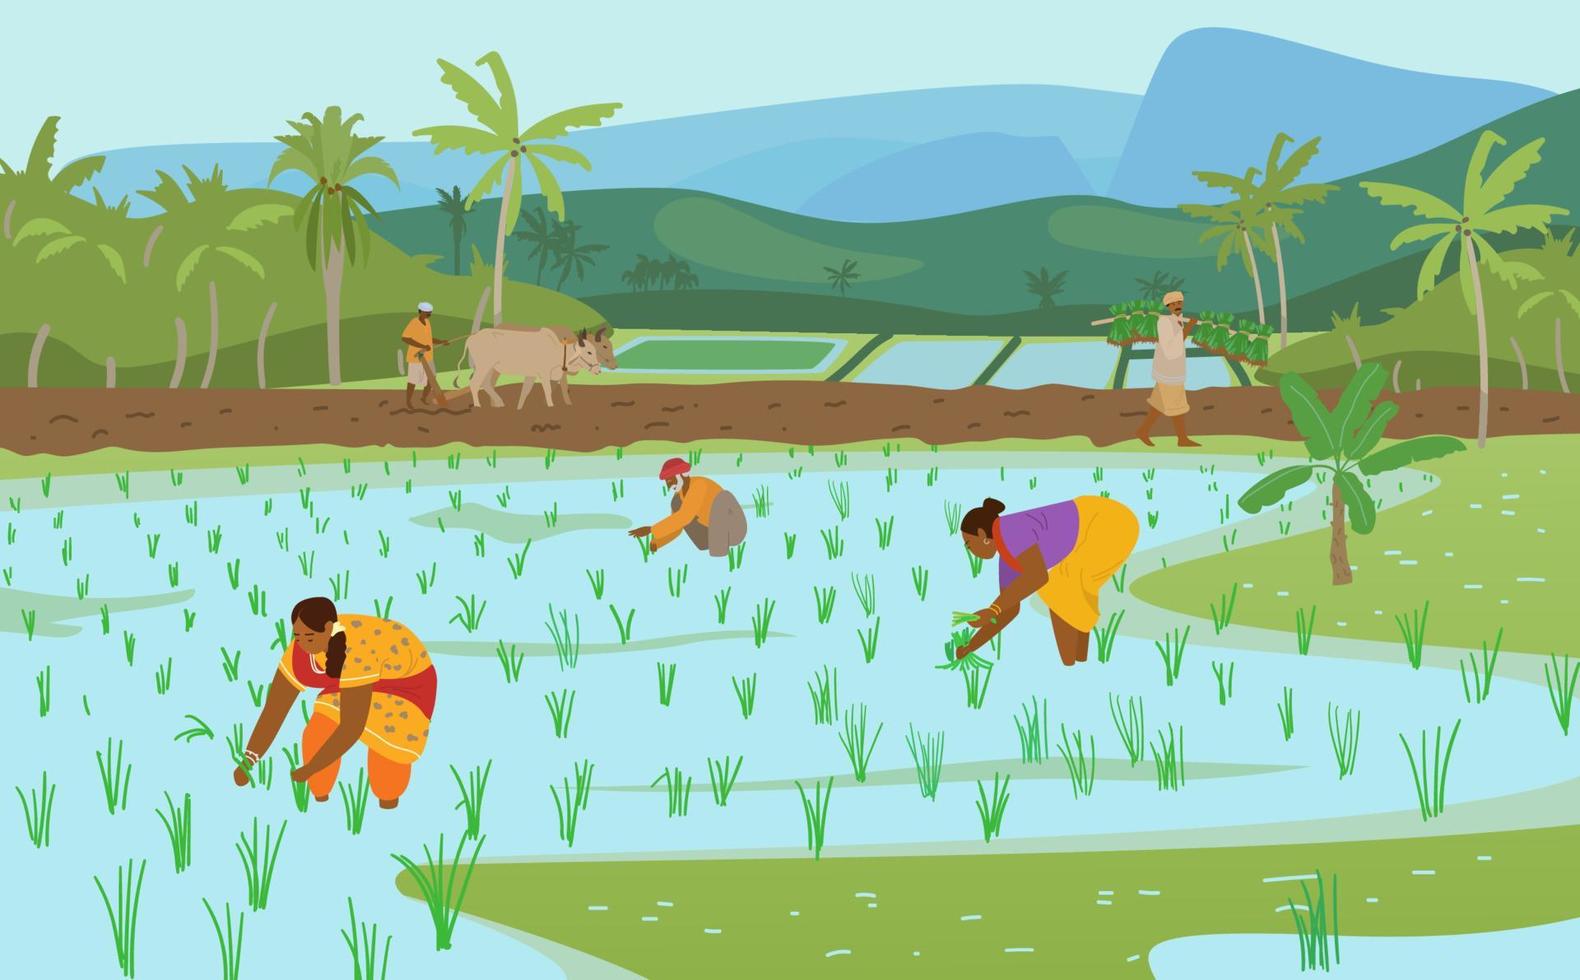 ilustração em vetor de campos de arroz indiano com workers.farmer arando campo com par de bois, carregando plantas de arroz para plantio. mulheres que trabalham no campo de arroz. agricultura tradicional autêntica.